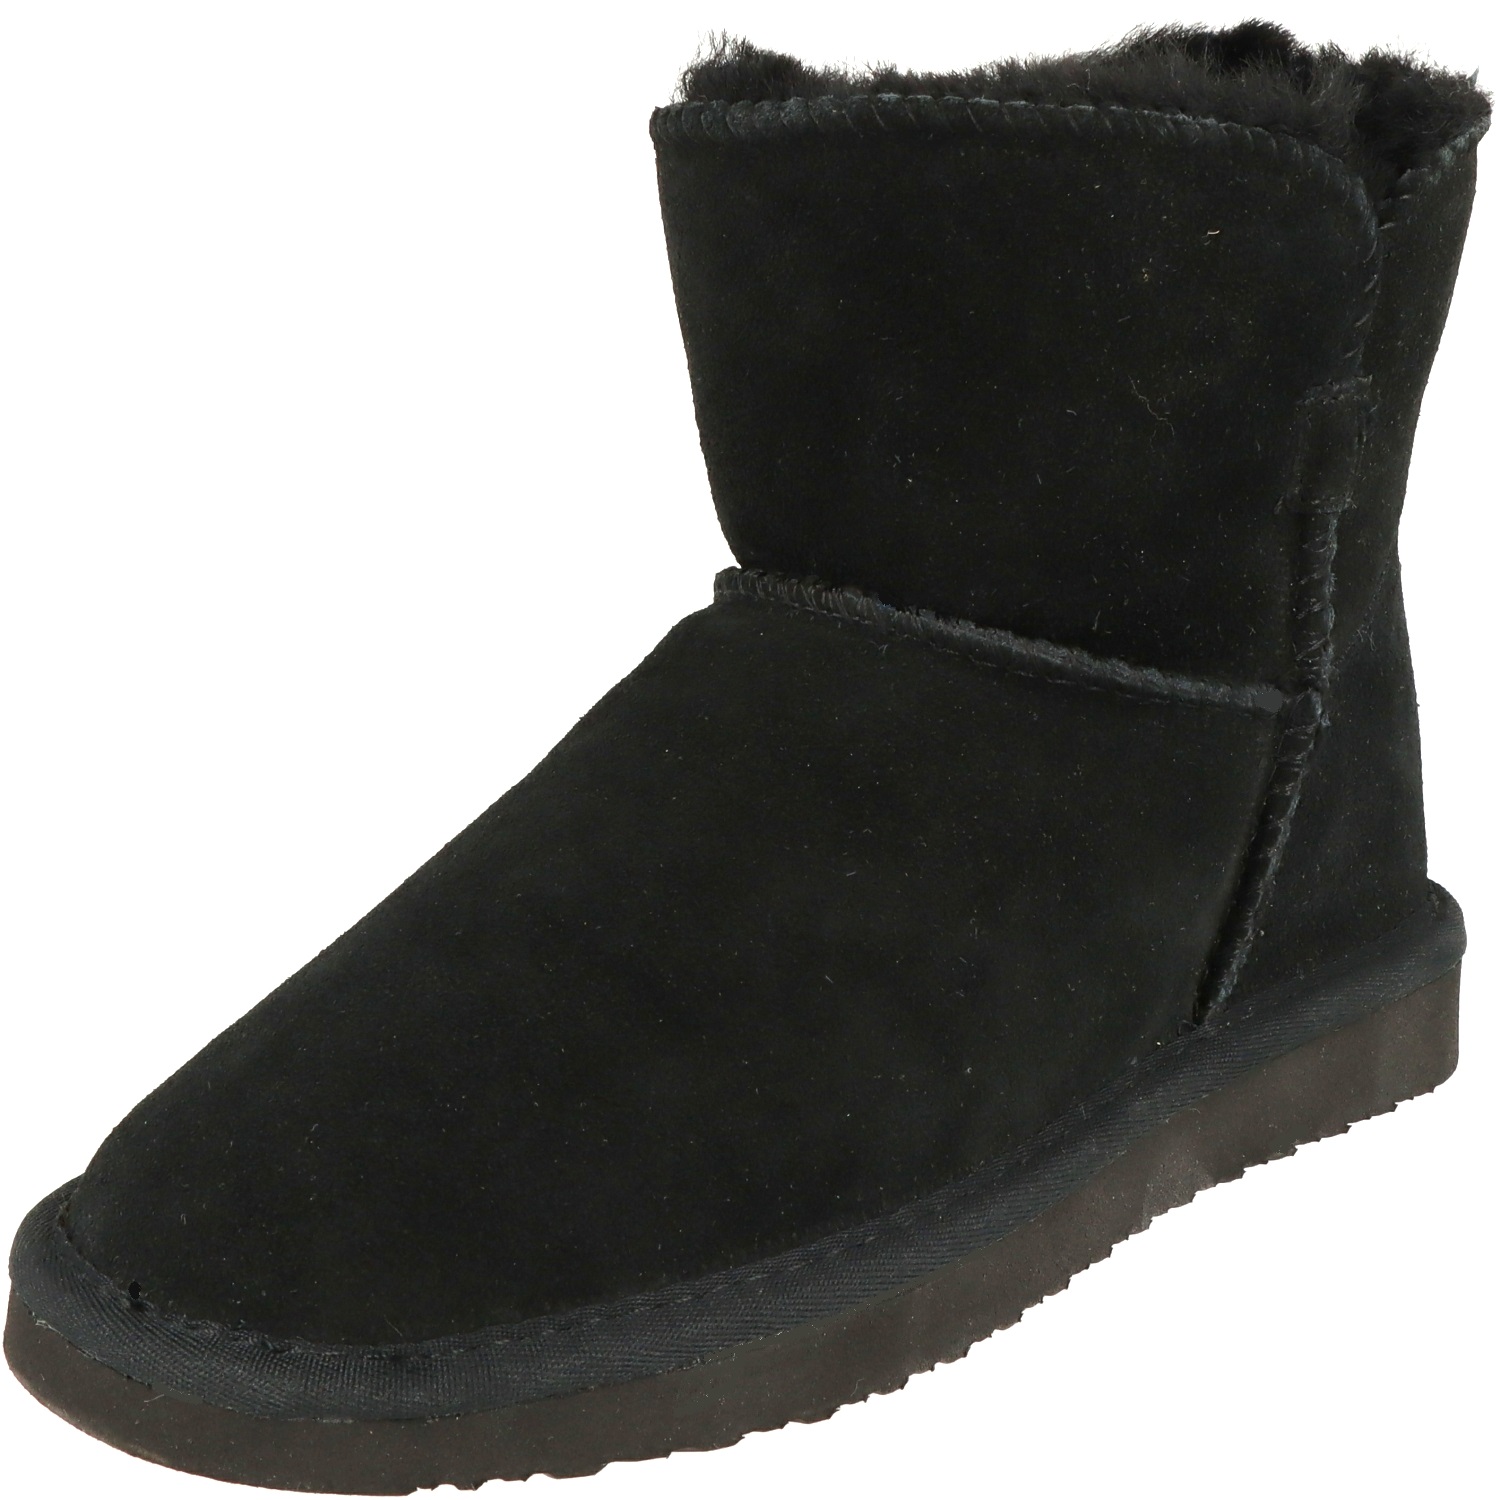 BLK1978 Damen Schuhe Winter Mid-Cut Boots 264-695 Lammfell gefüttert Black